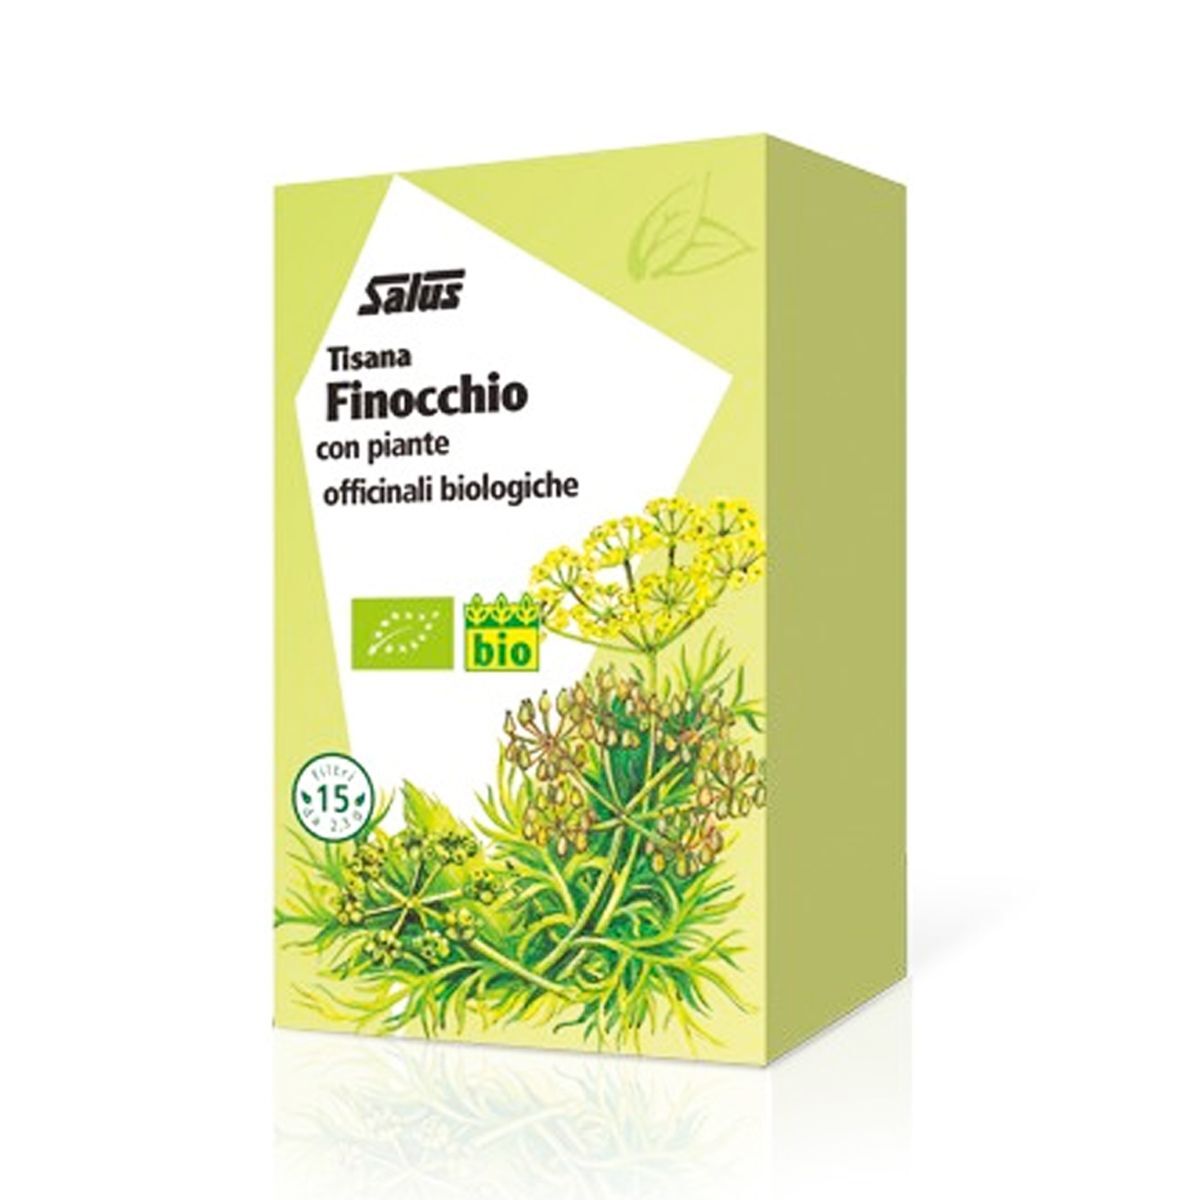 Salus Haus Finocchio Tisana Digestiva 15 Filtri Bio